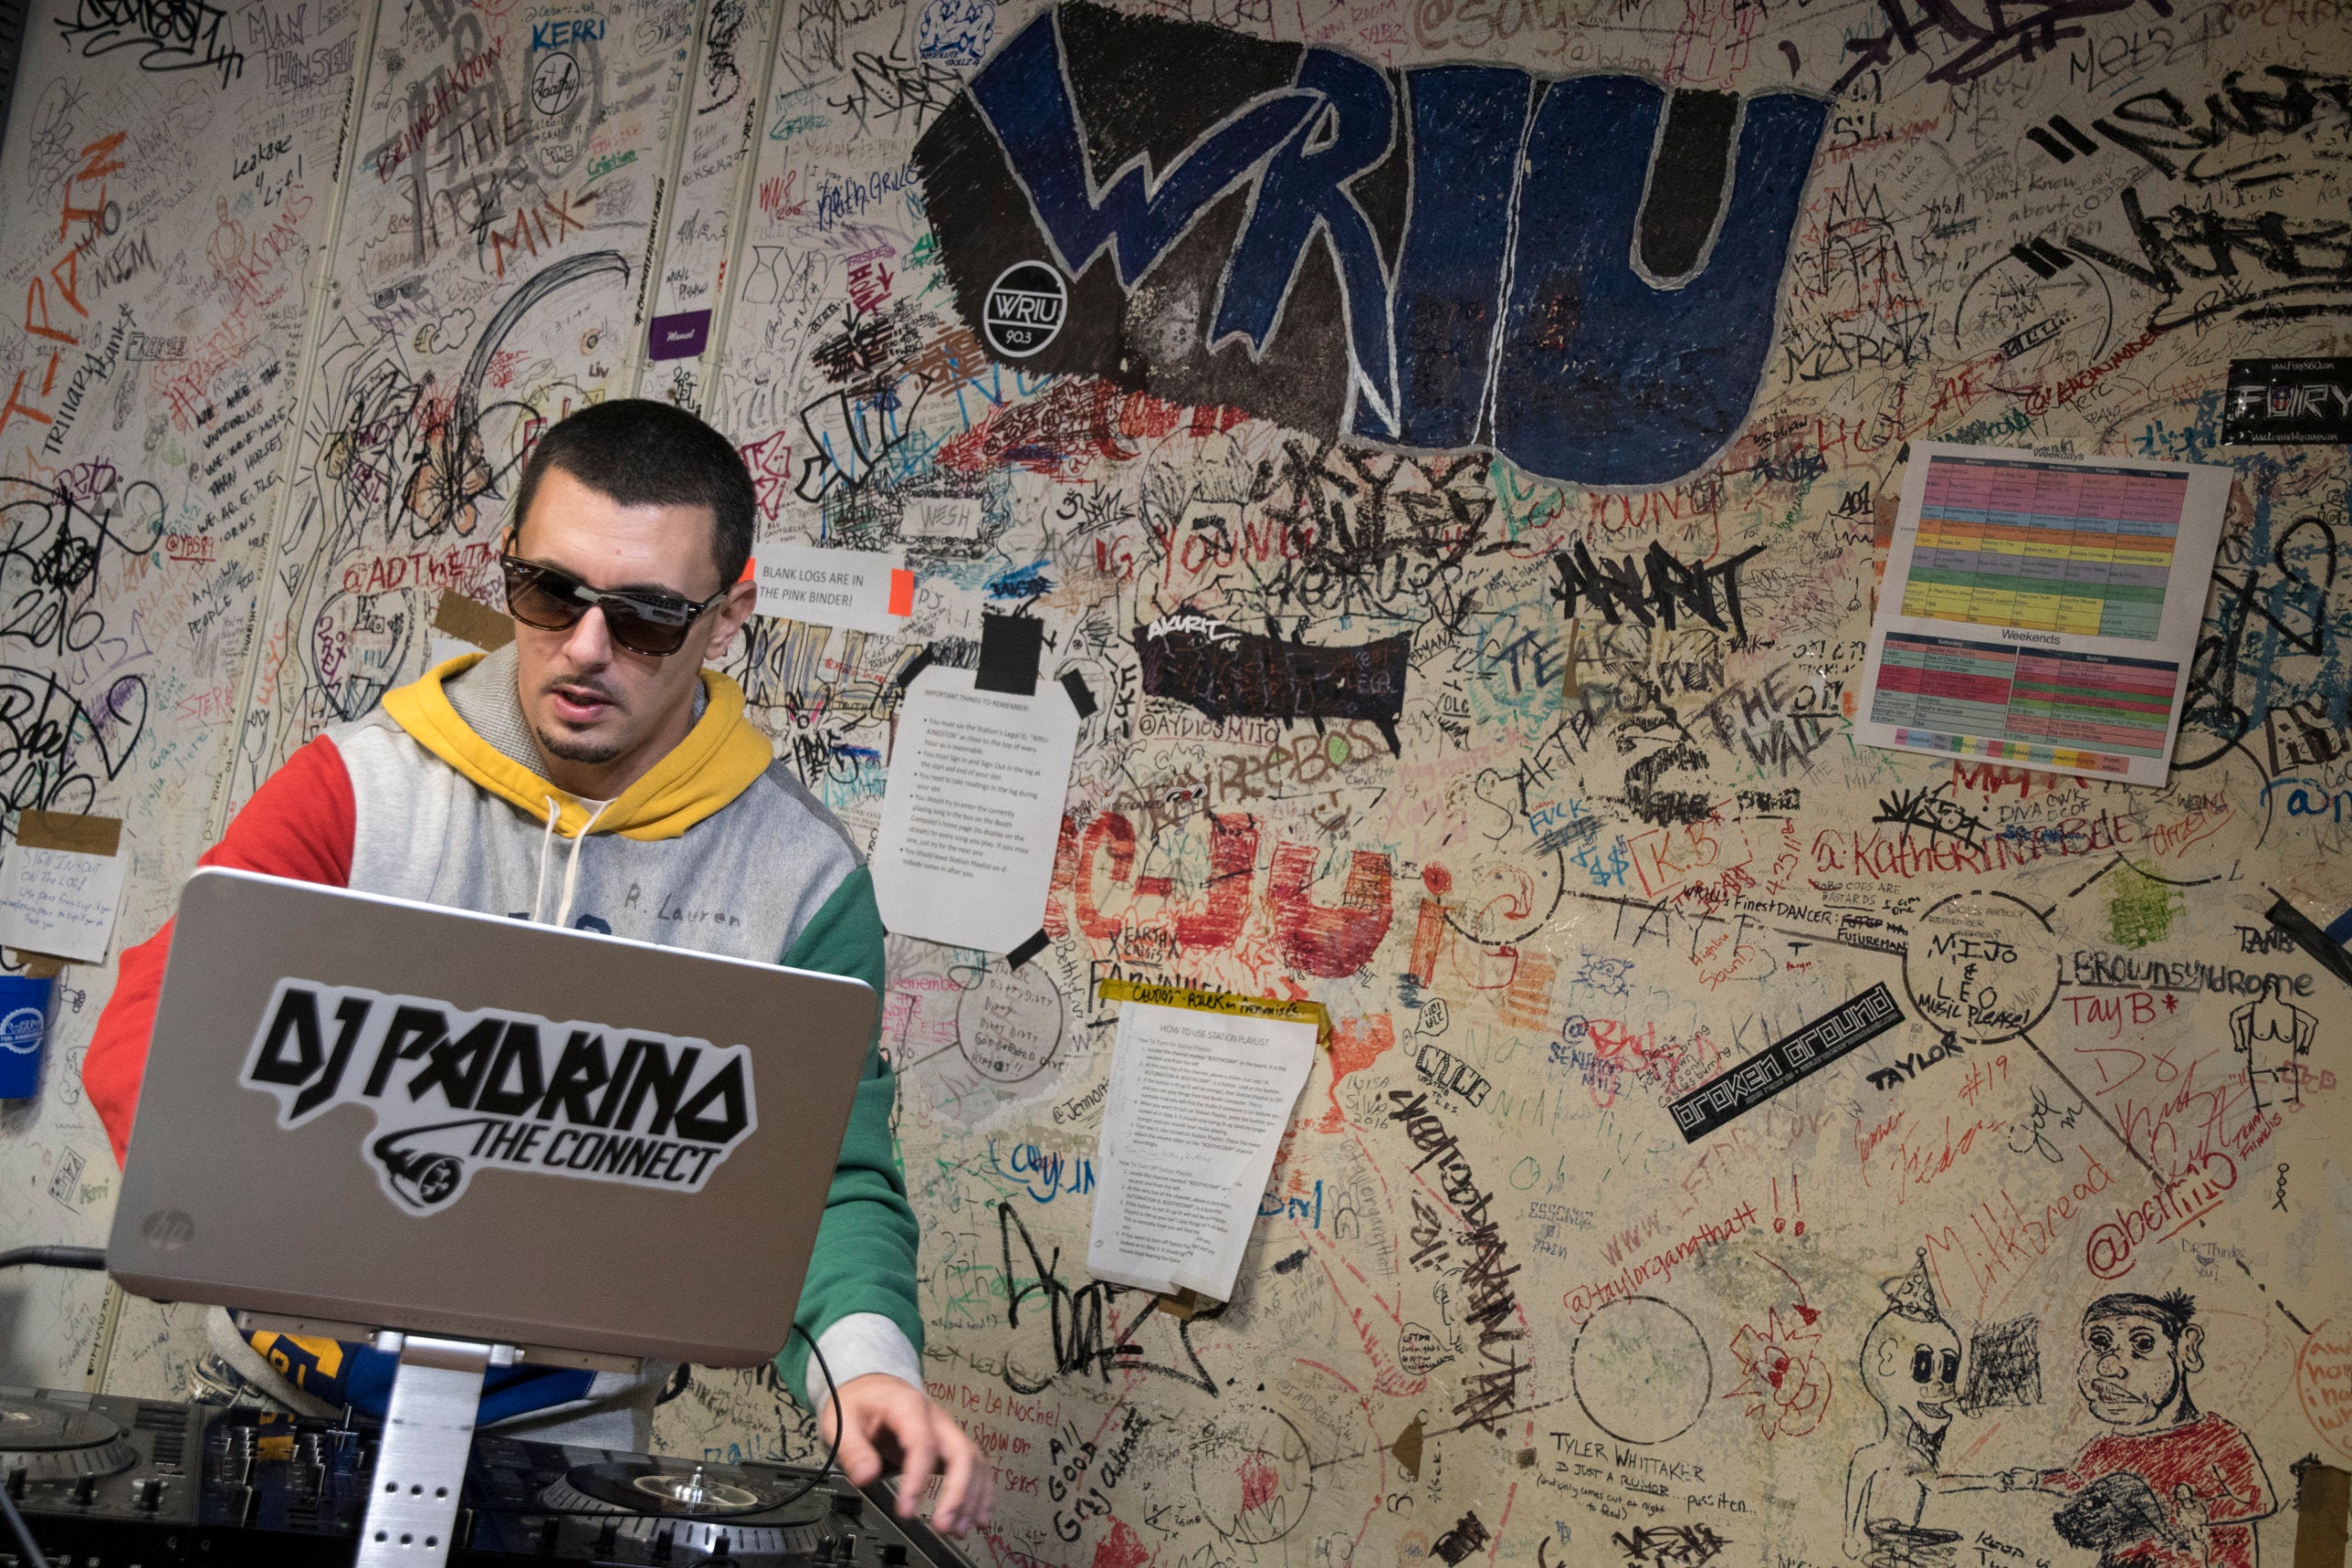 DJ Padrino in the WRIU studio